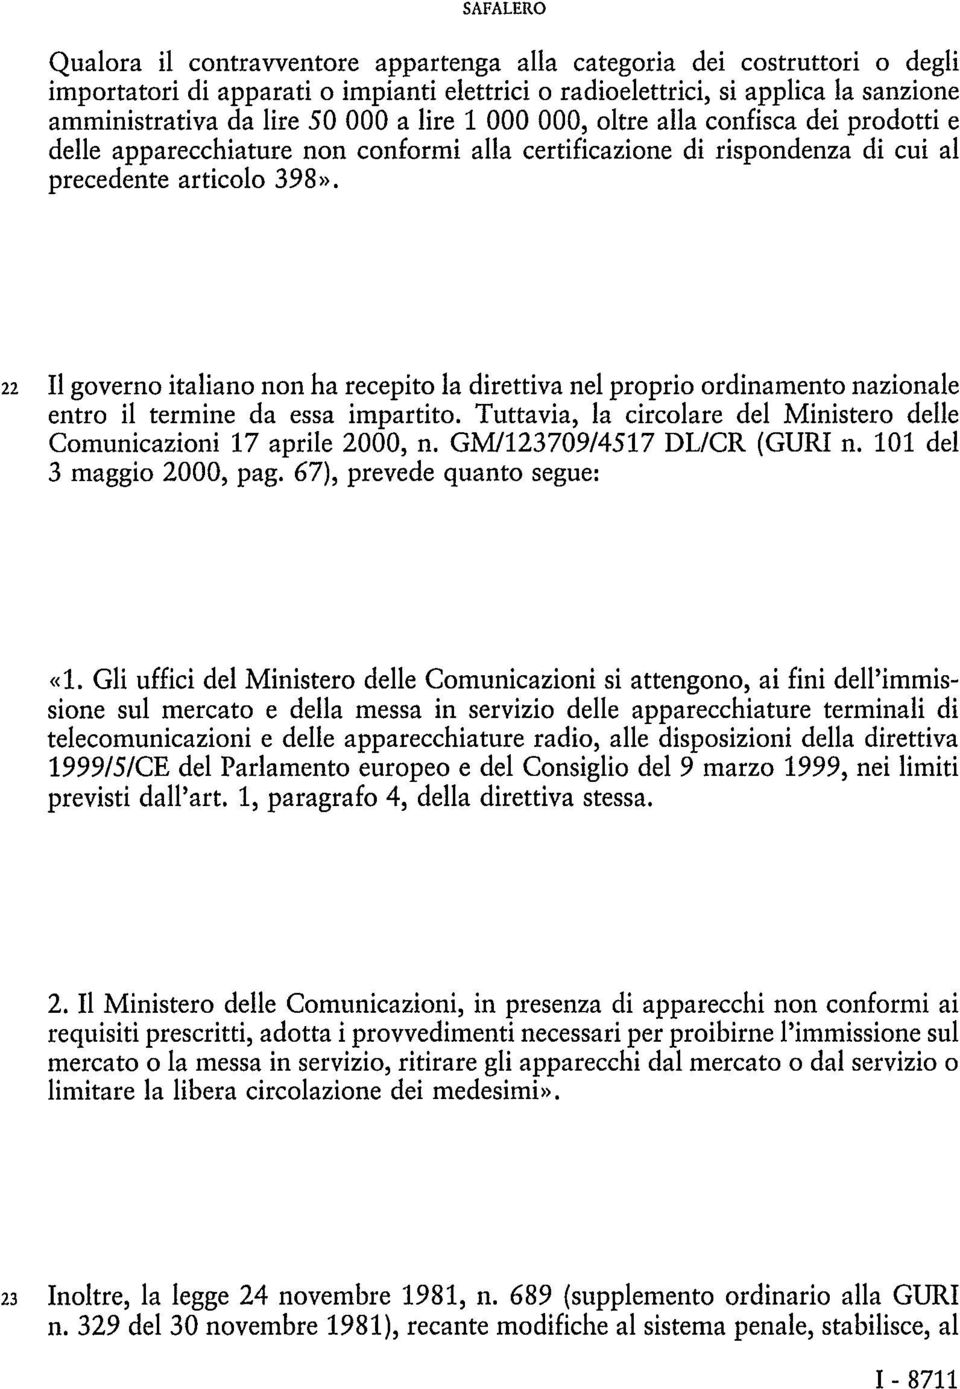 22 Il governo italiano non ha recepito la direttiva nel proprio ordinamento nazionale entro il termine da essa impartito. Tuttavia, la circolare del Ministero delle Comunicazioni 17 aprile 2000, n.